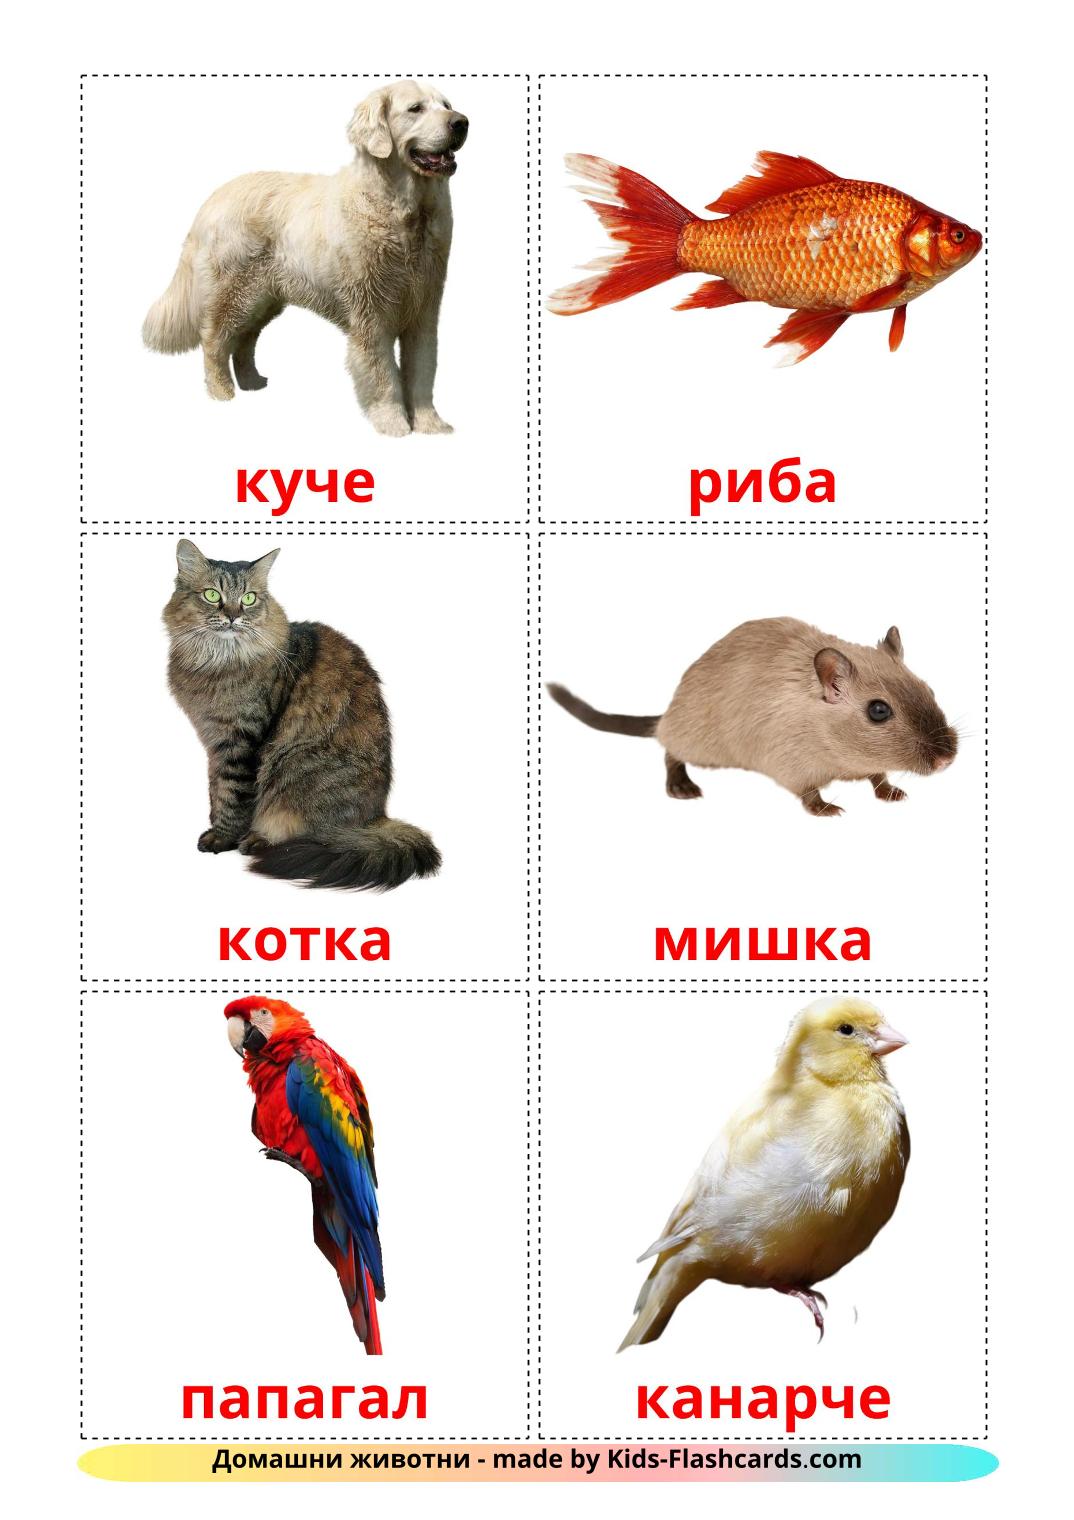 Les animaux Domestiques - 10 Flashcards bashkir imprimables gratuitement